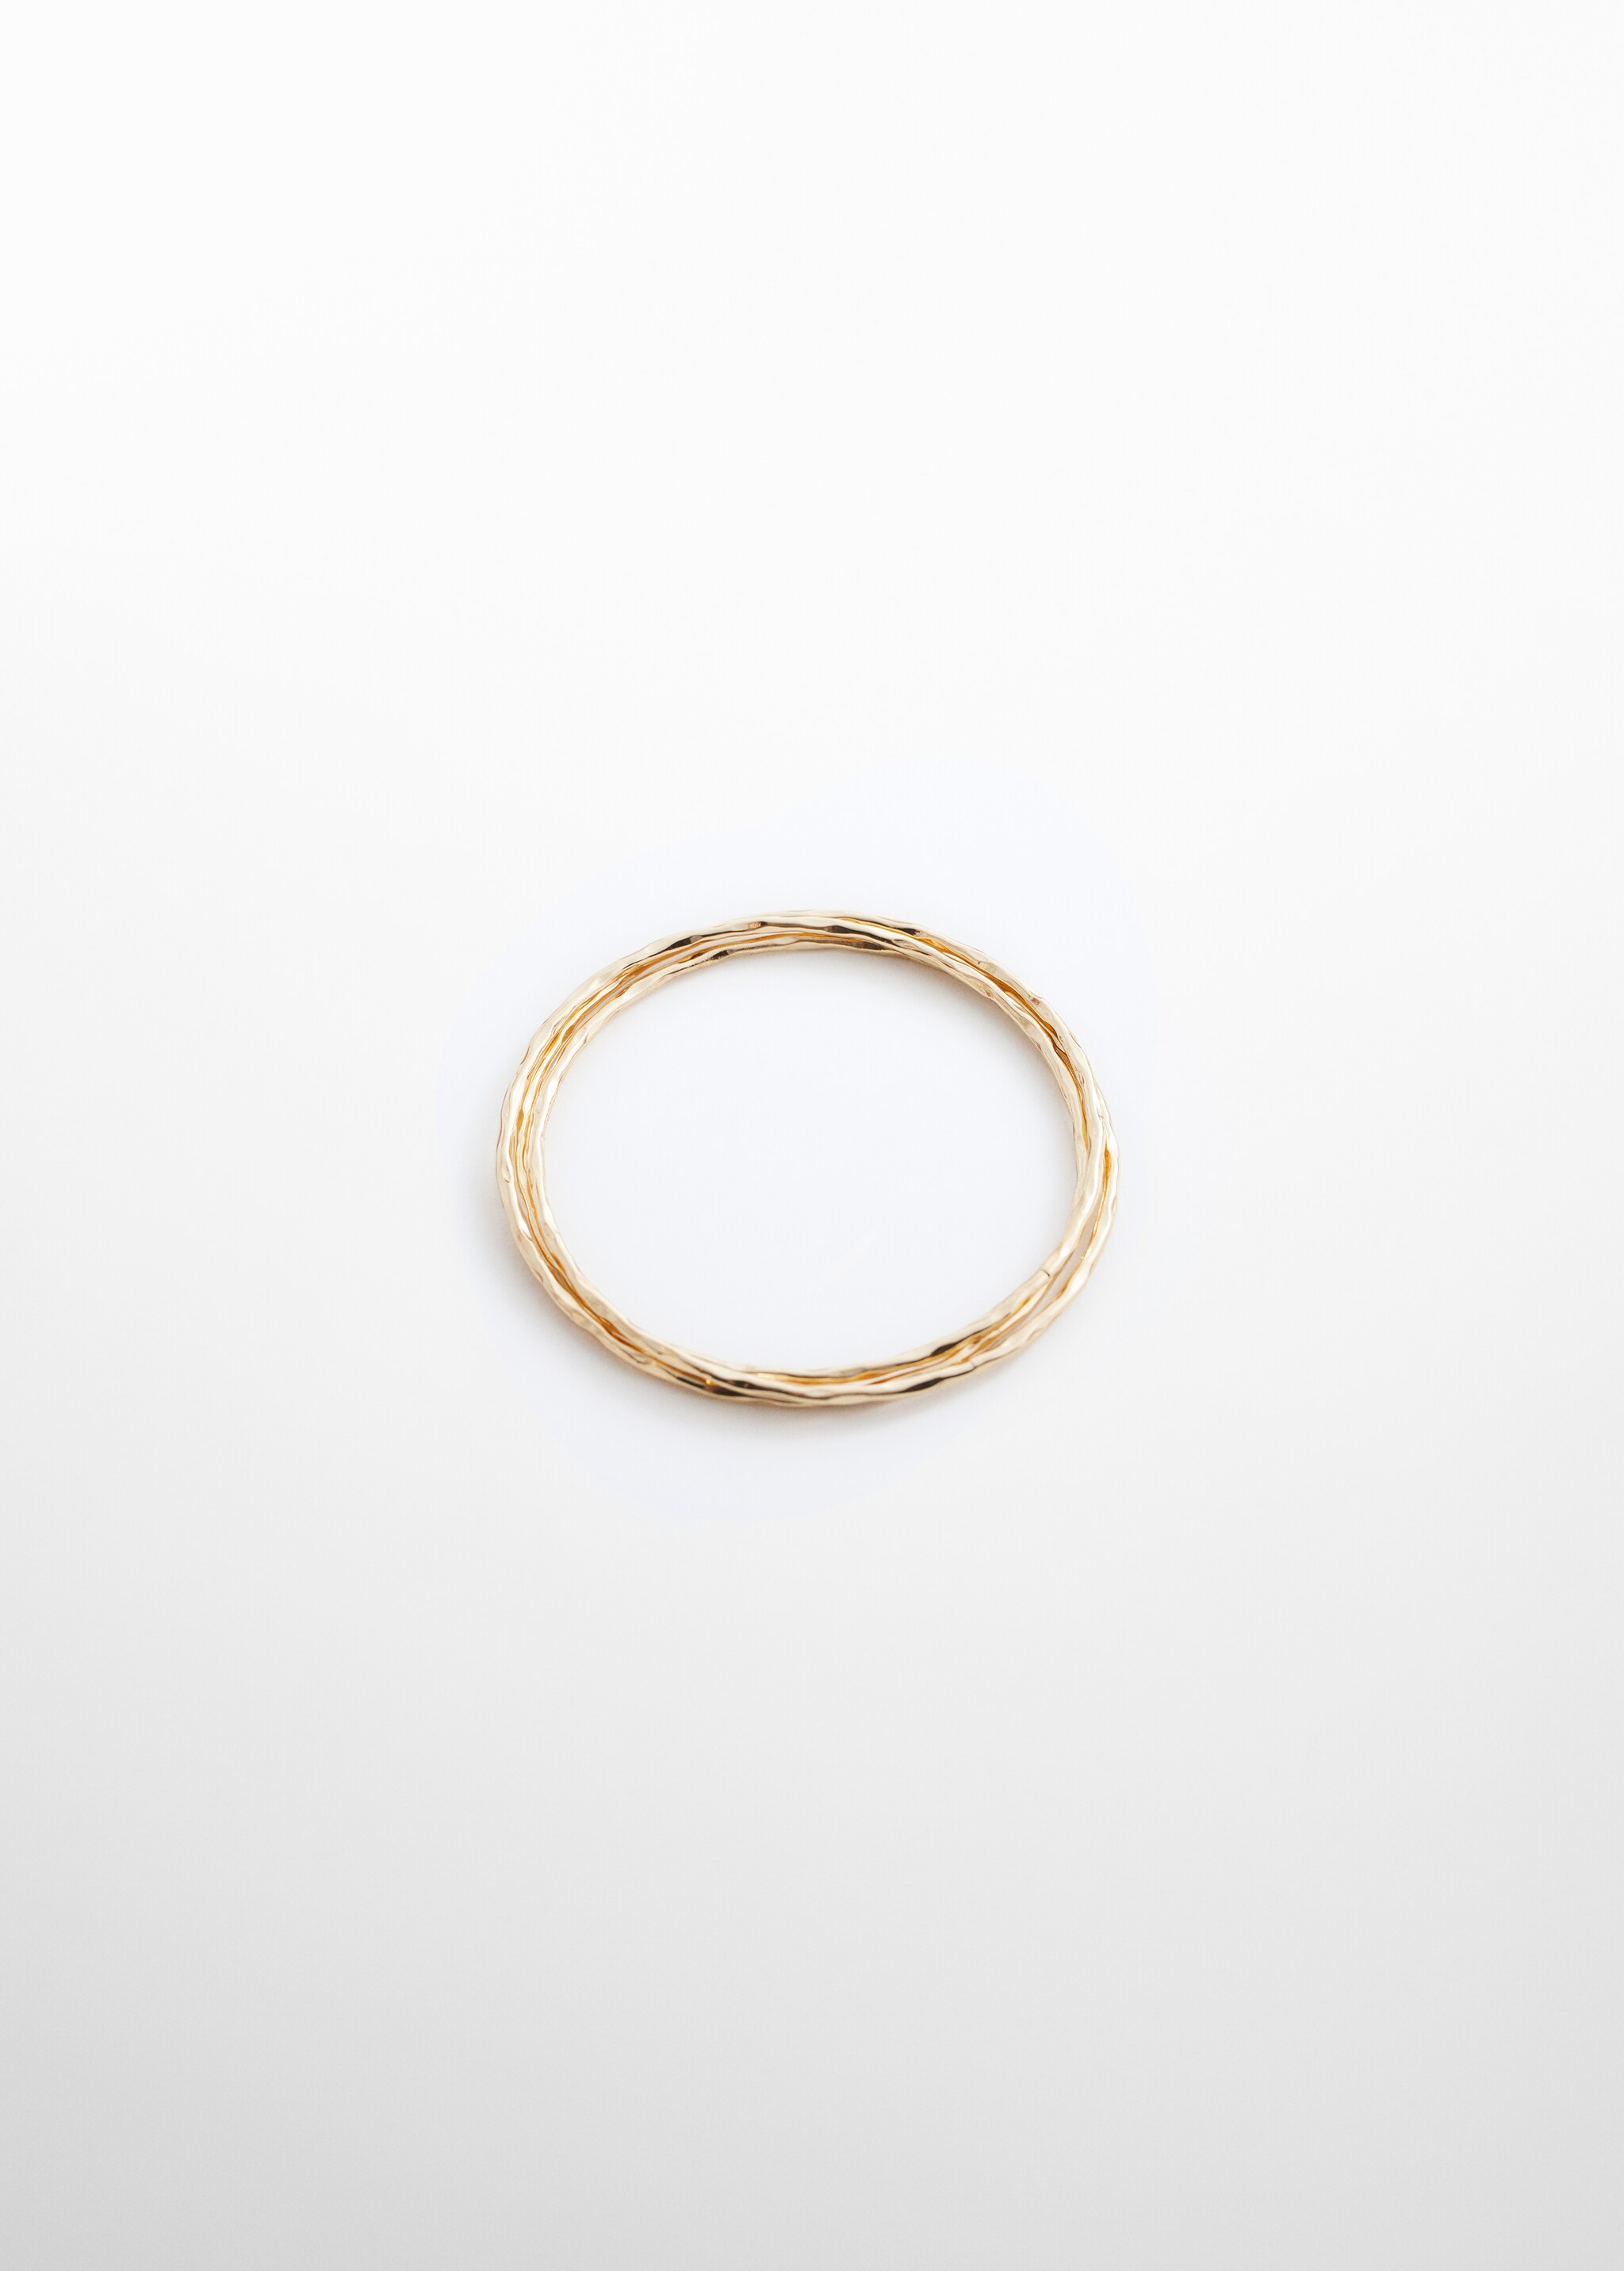 Комбинированные браслеты-кольца - Изделие без модели